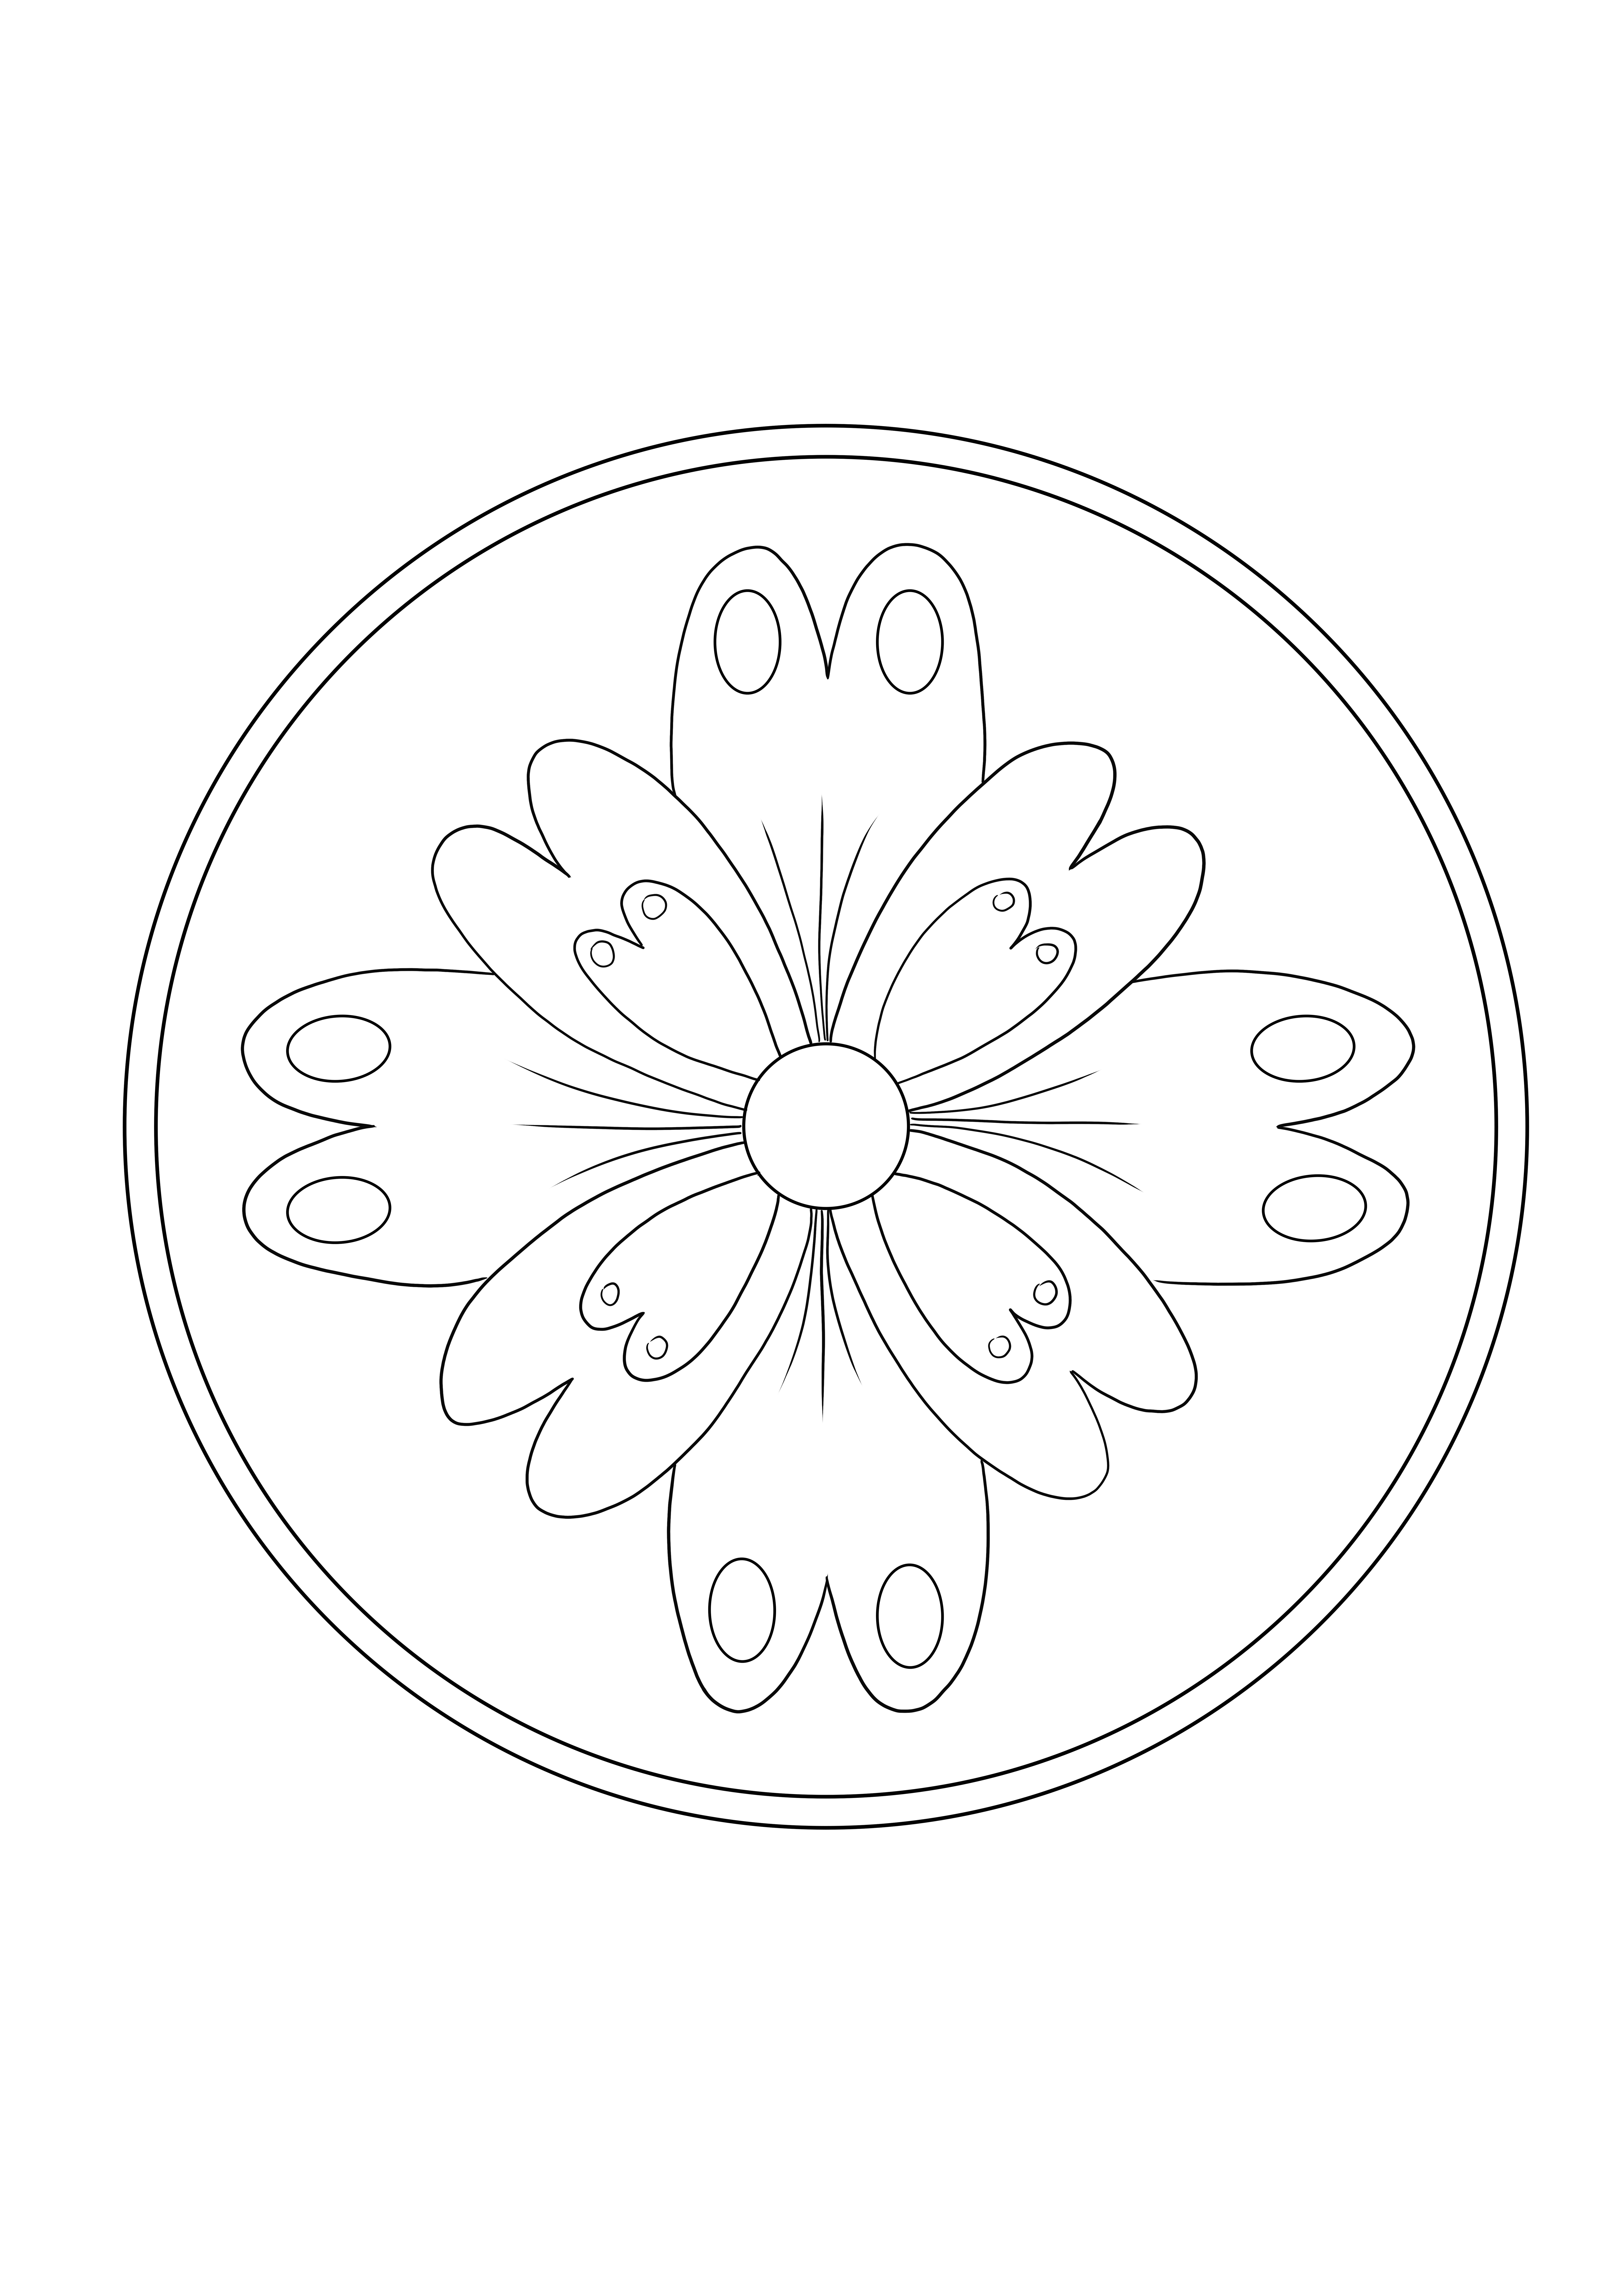 Easy Mandala Flower se puede descargar gratis y colorear la imagen